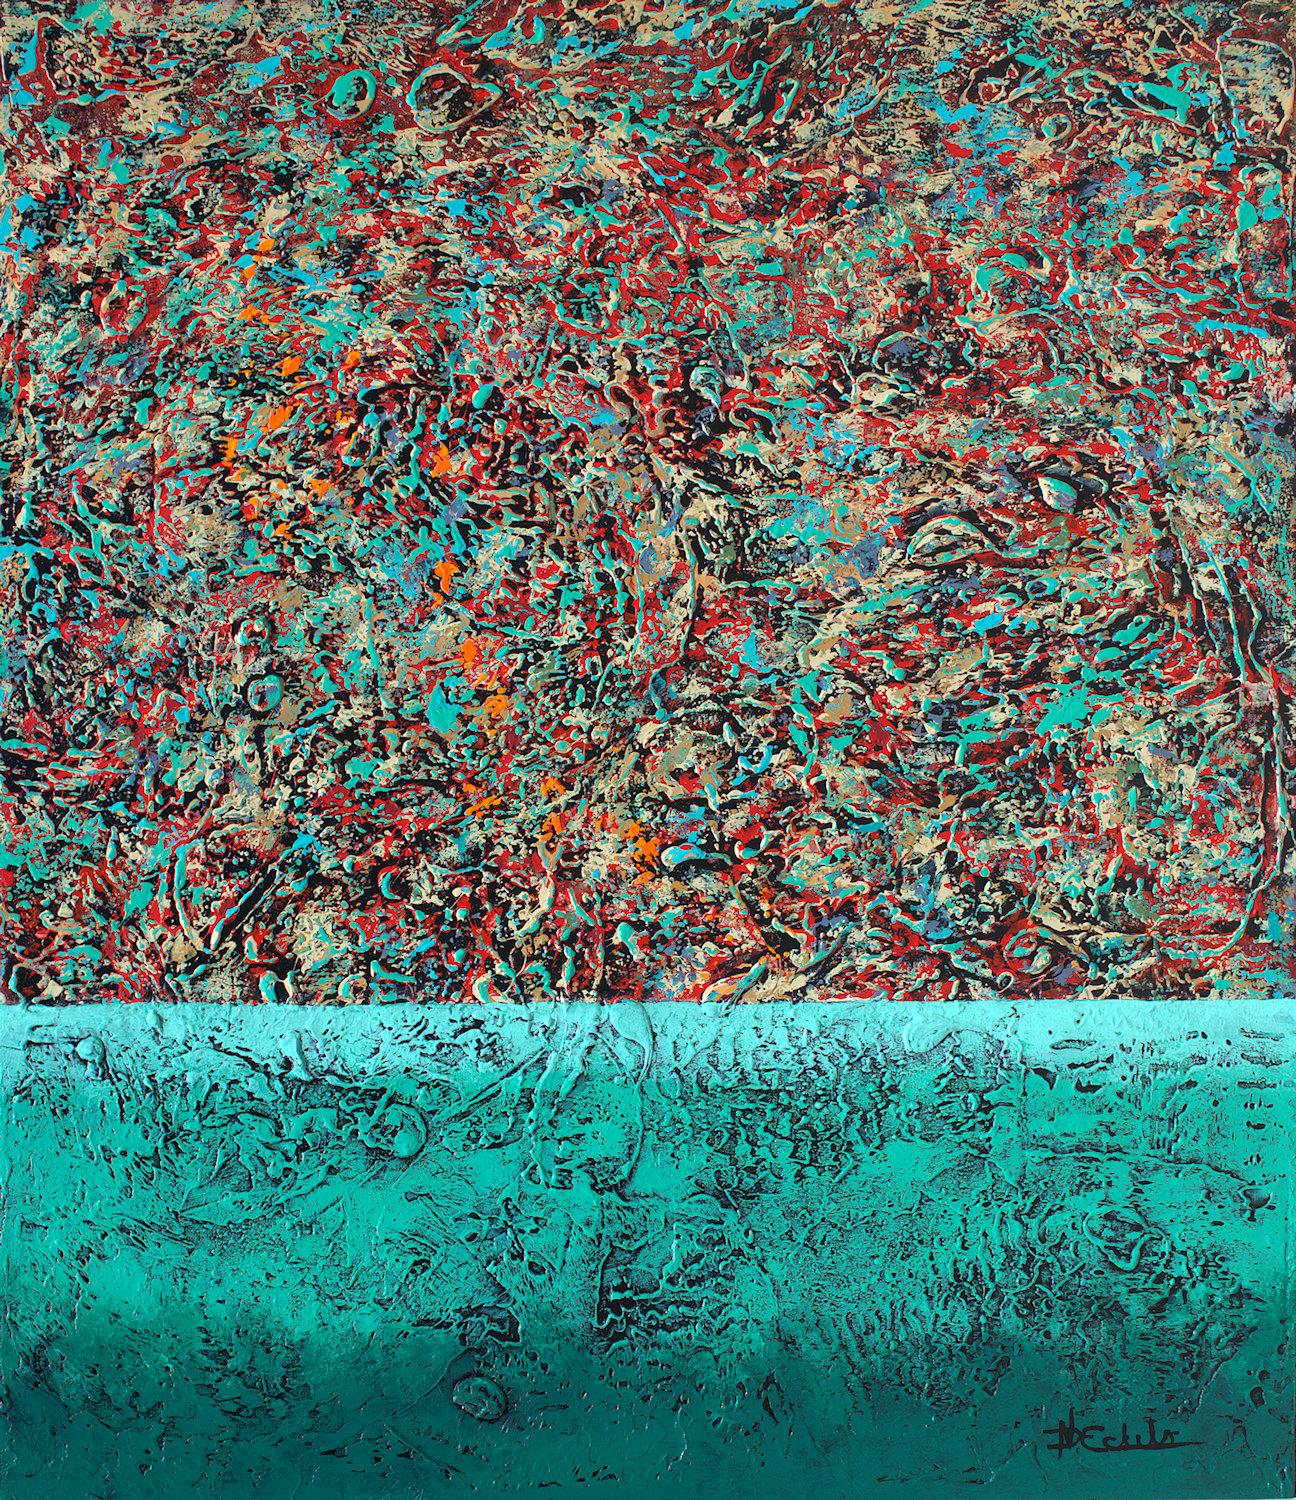 Abstract Painting Nancy Eckels - « Texture Love », technique mixte abstraite avec des verts texturés, des rouges et des turquoises